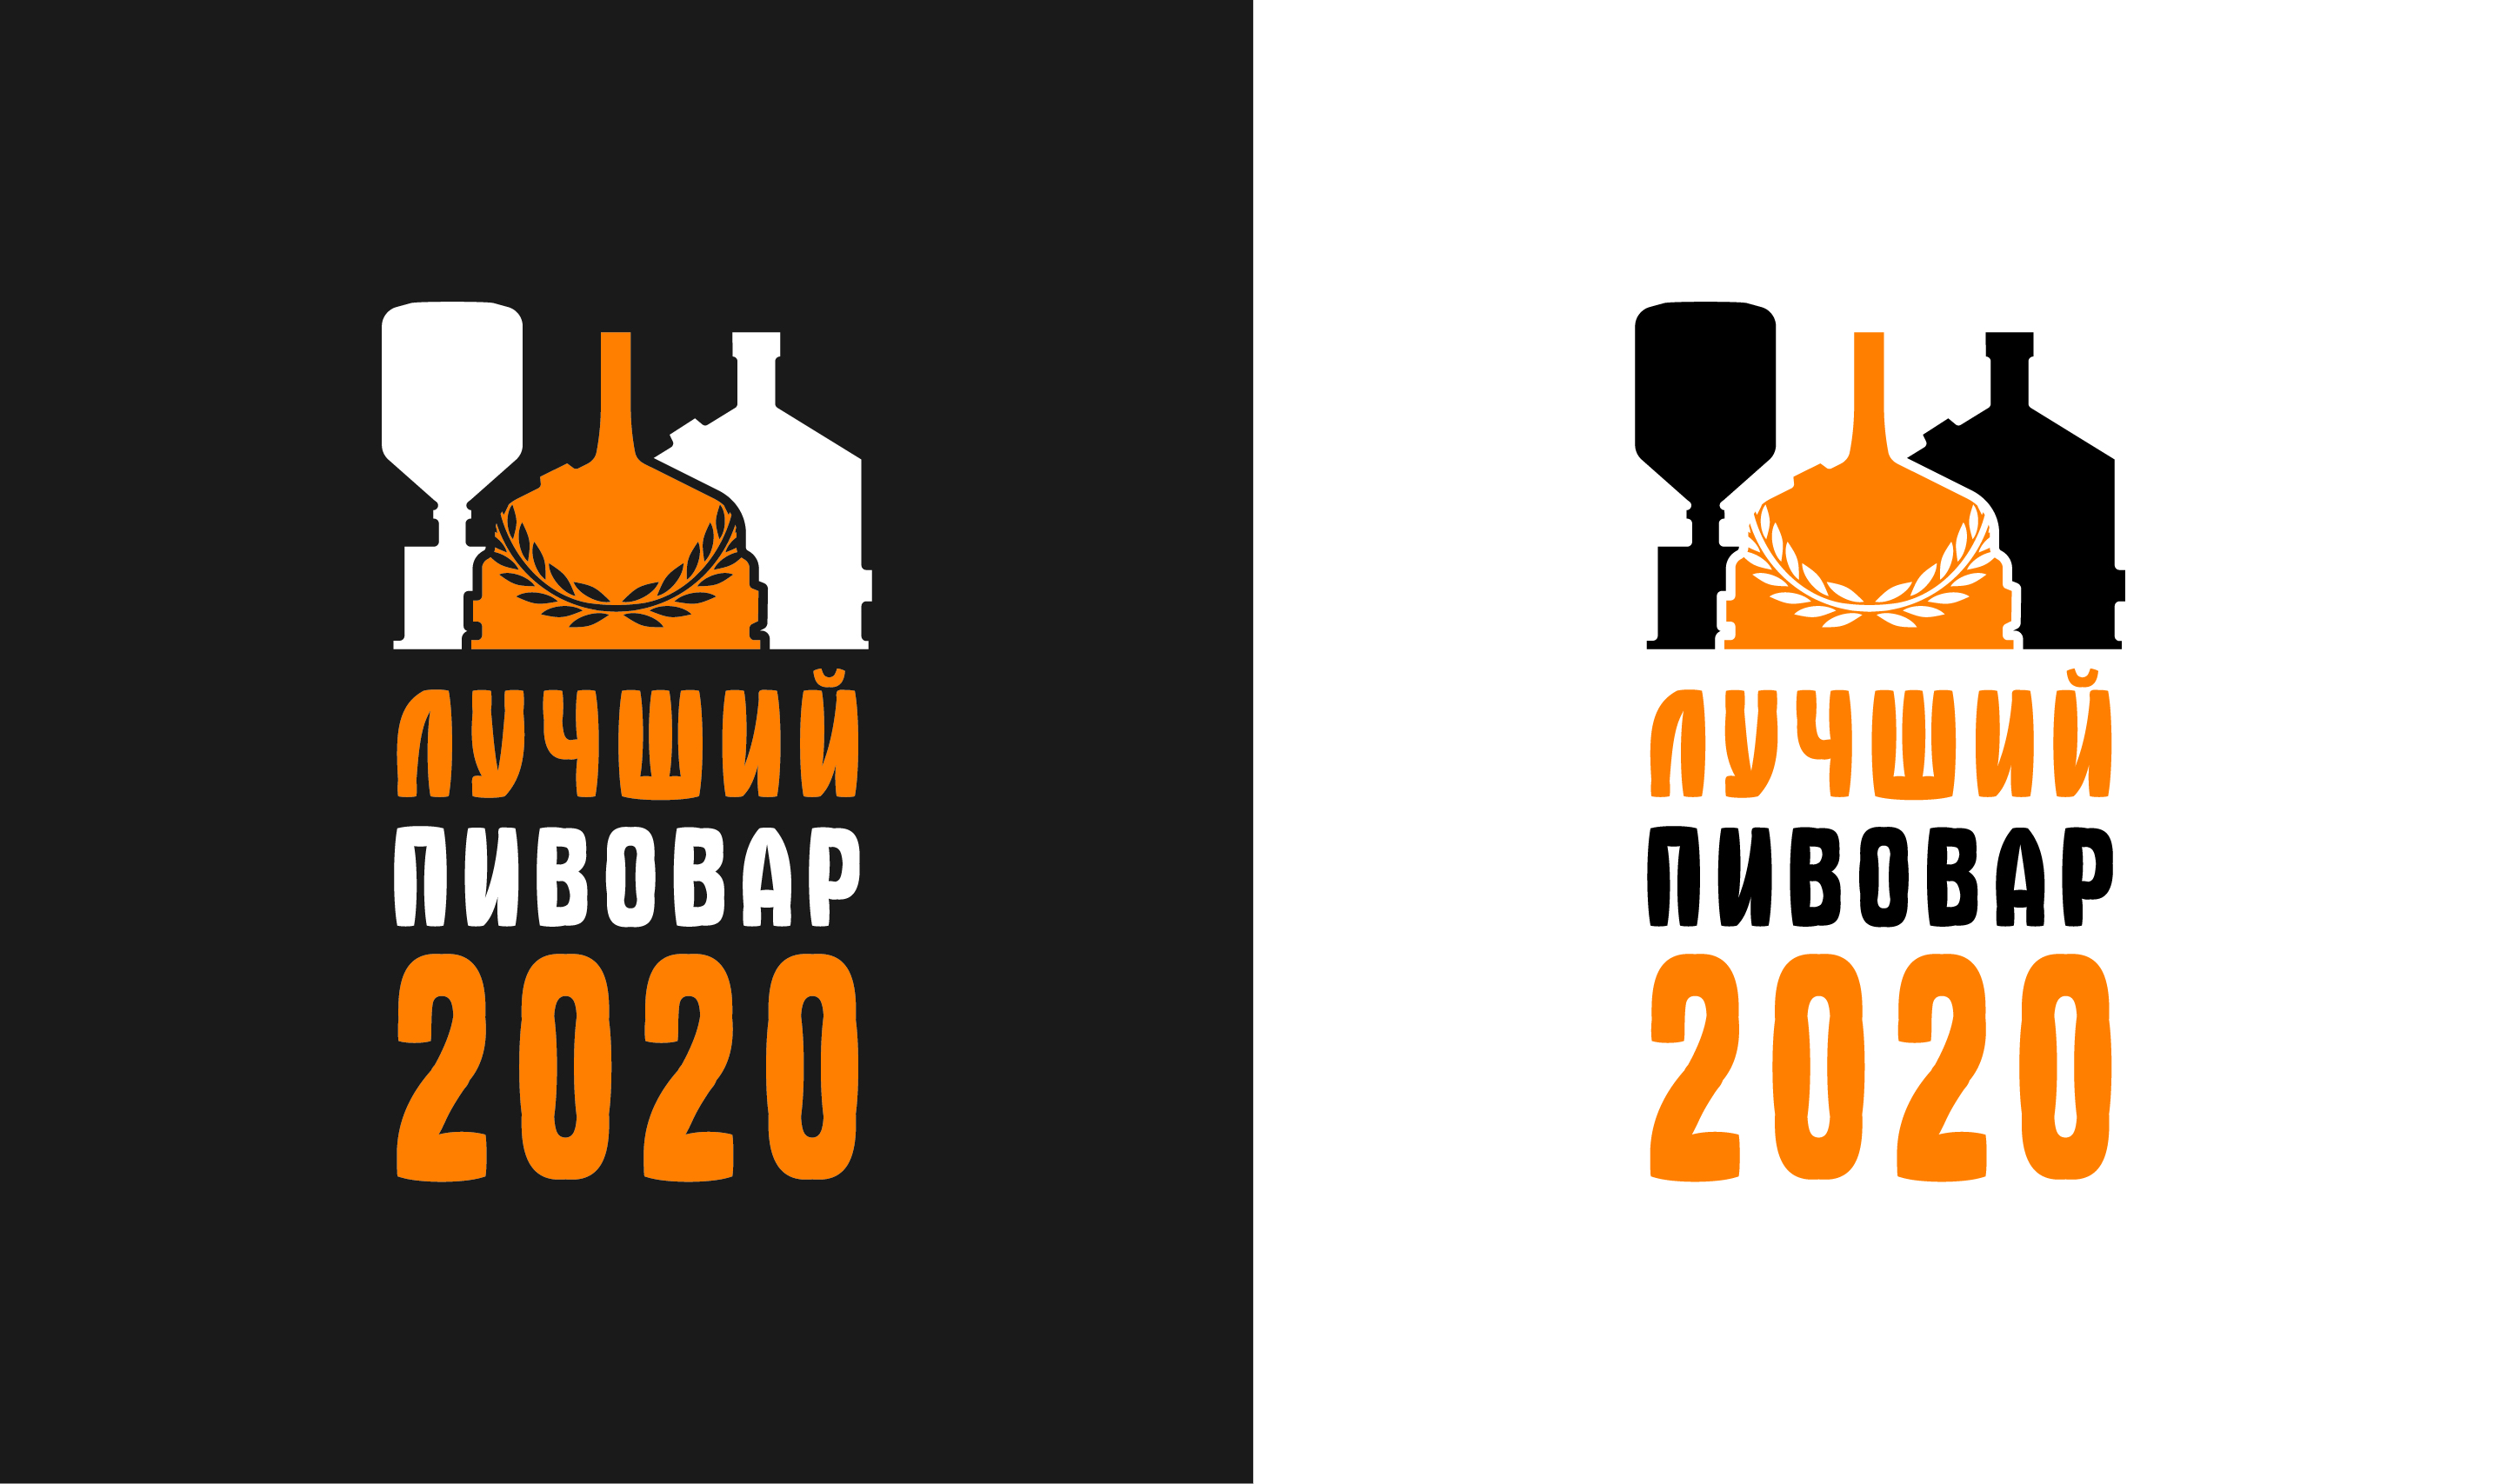 Финал I Всероссийского конкурса «Лучший пивовар» перенесен на 20-21 сентября 2020 года